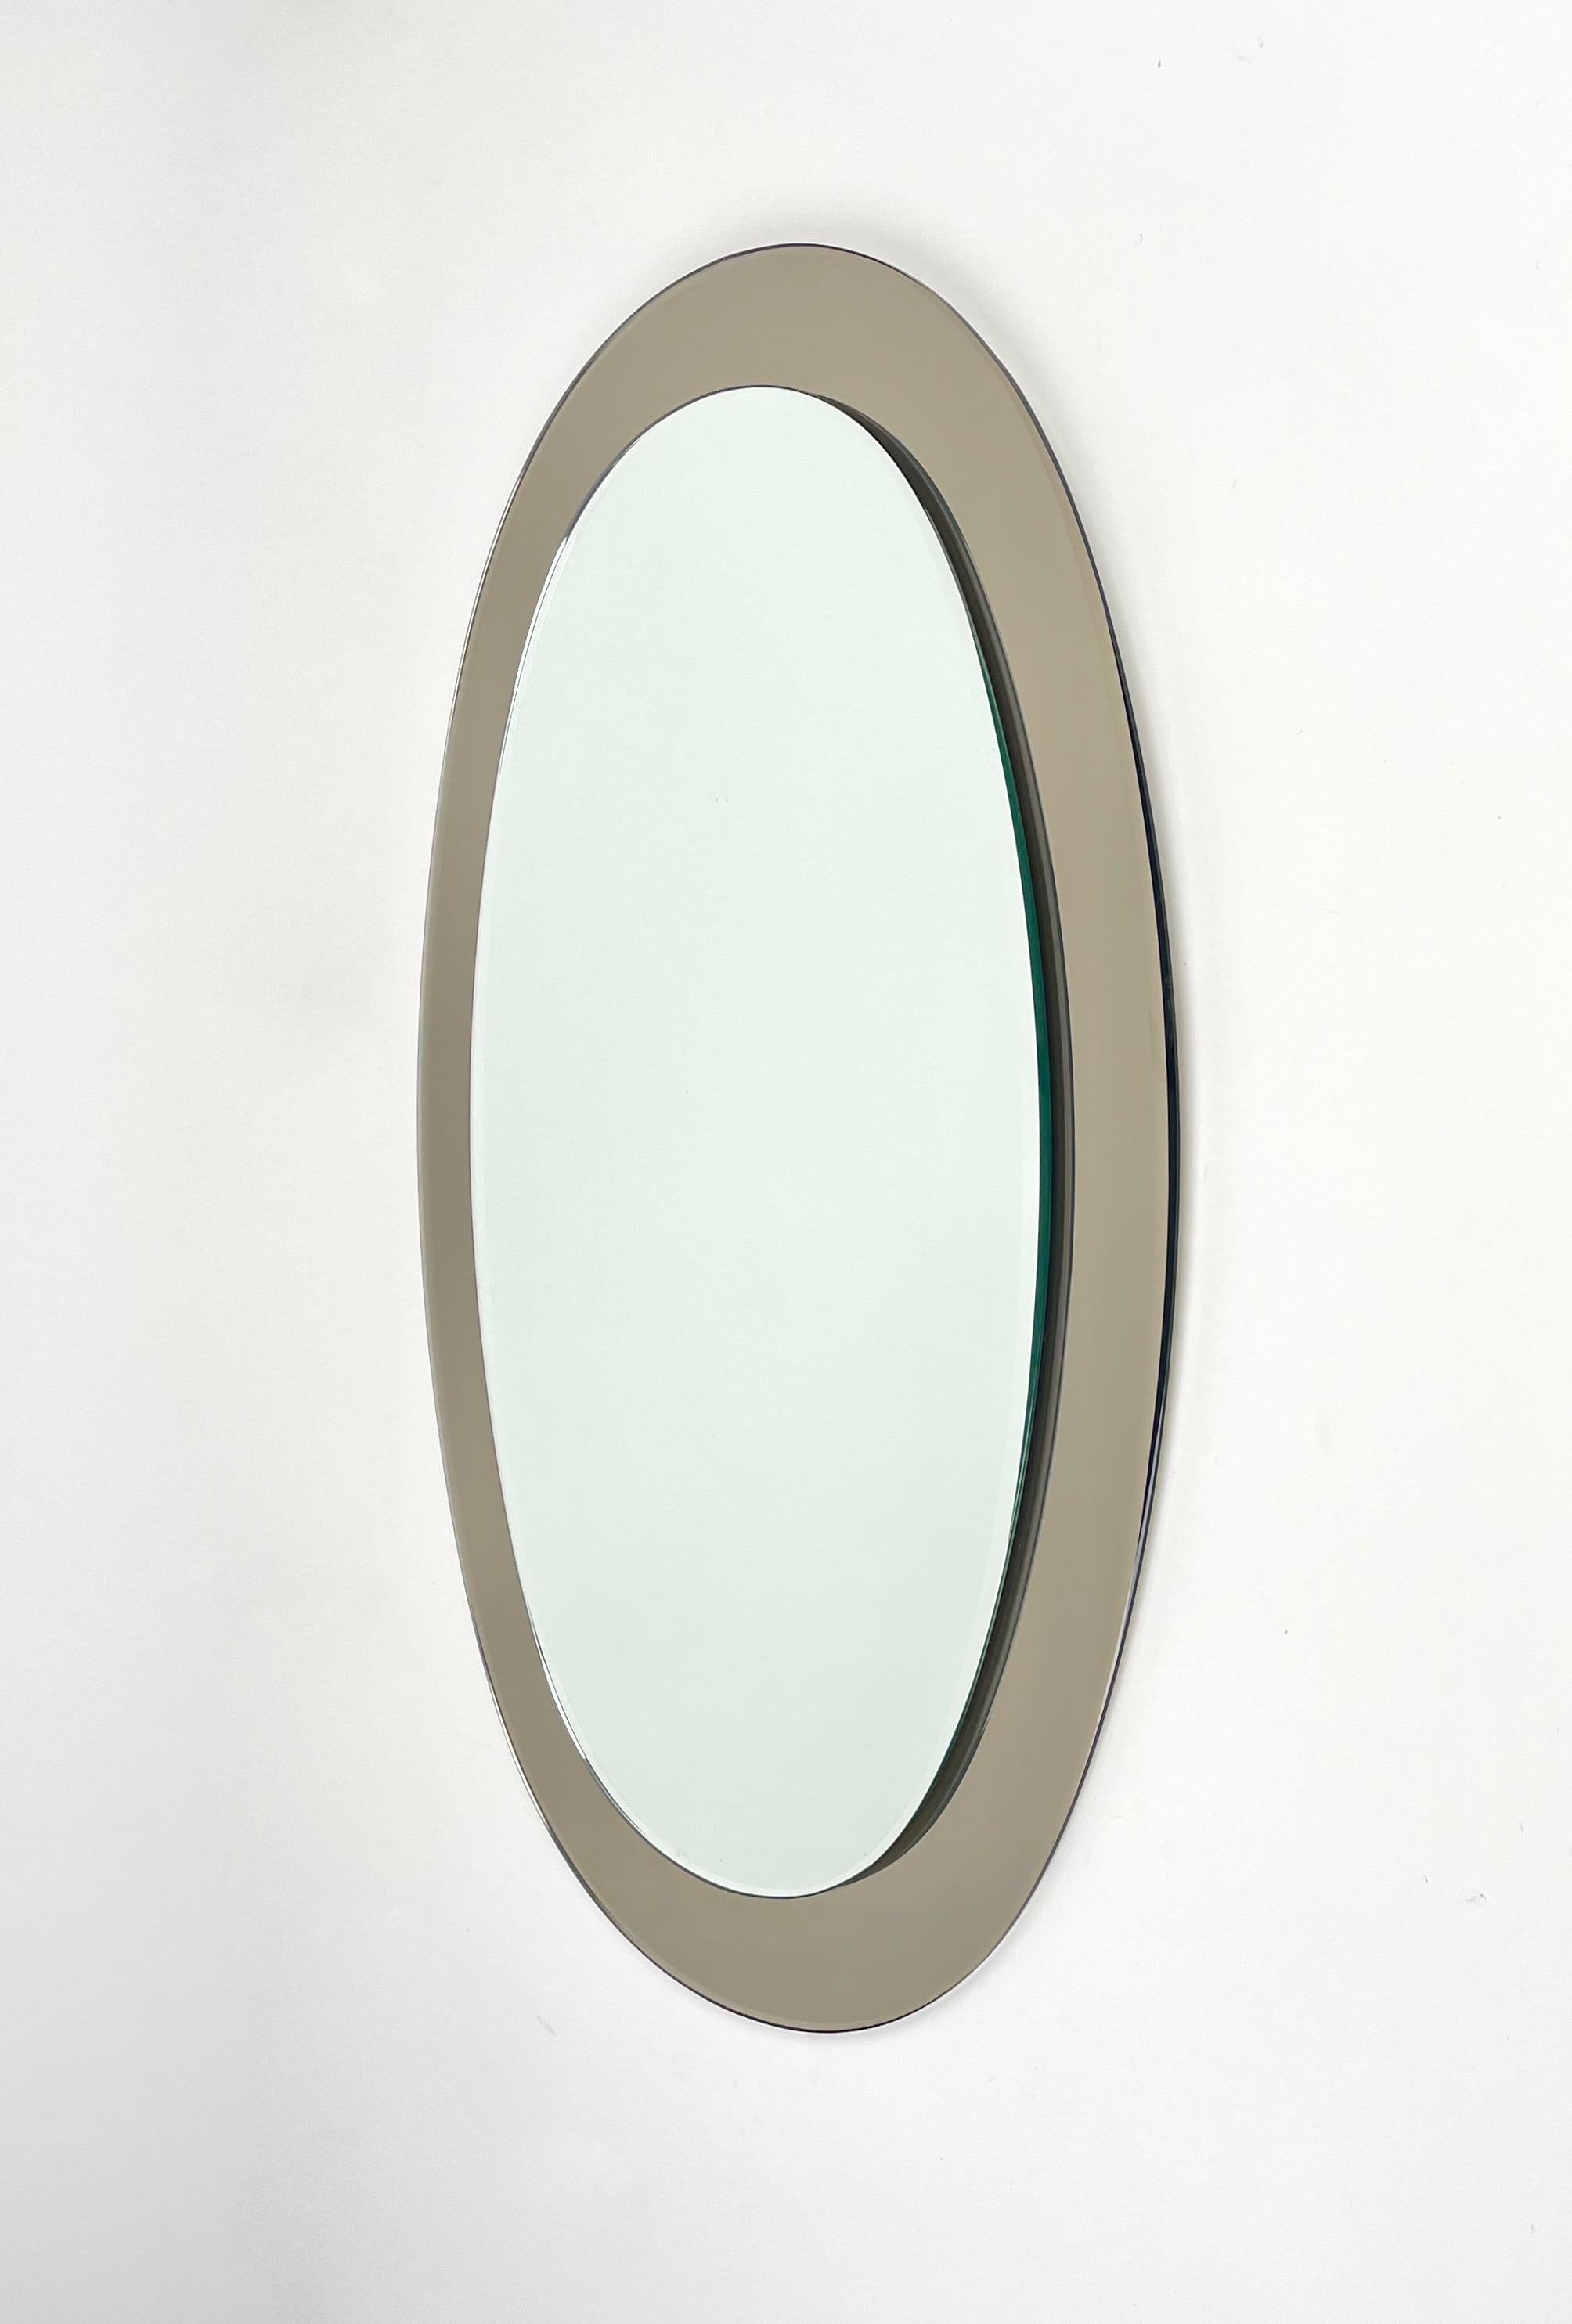 Italian Oval Wall Mirror by Sena Cristal, Italy 1970s